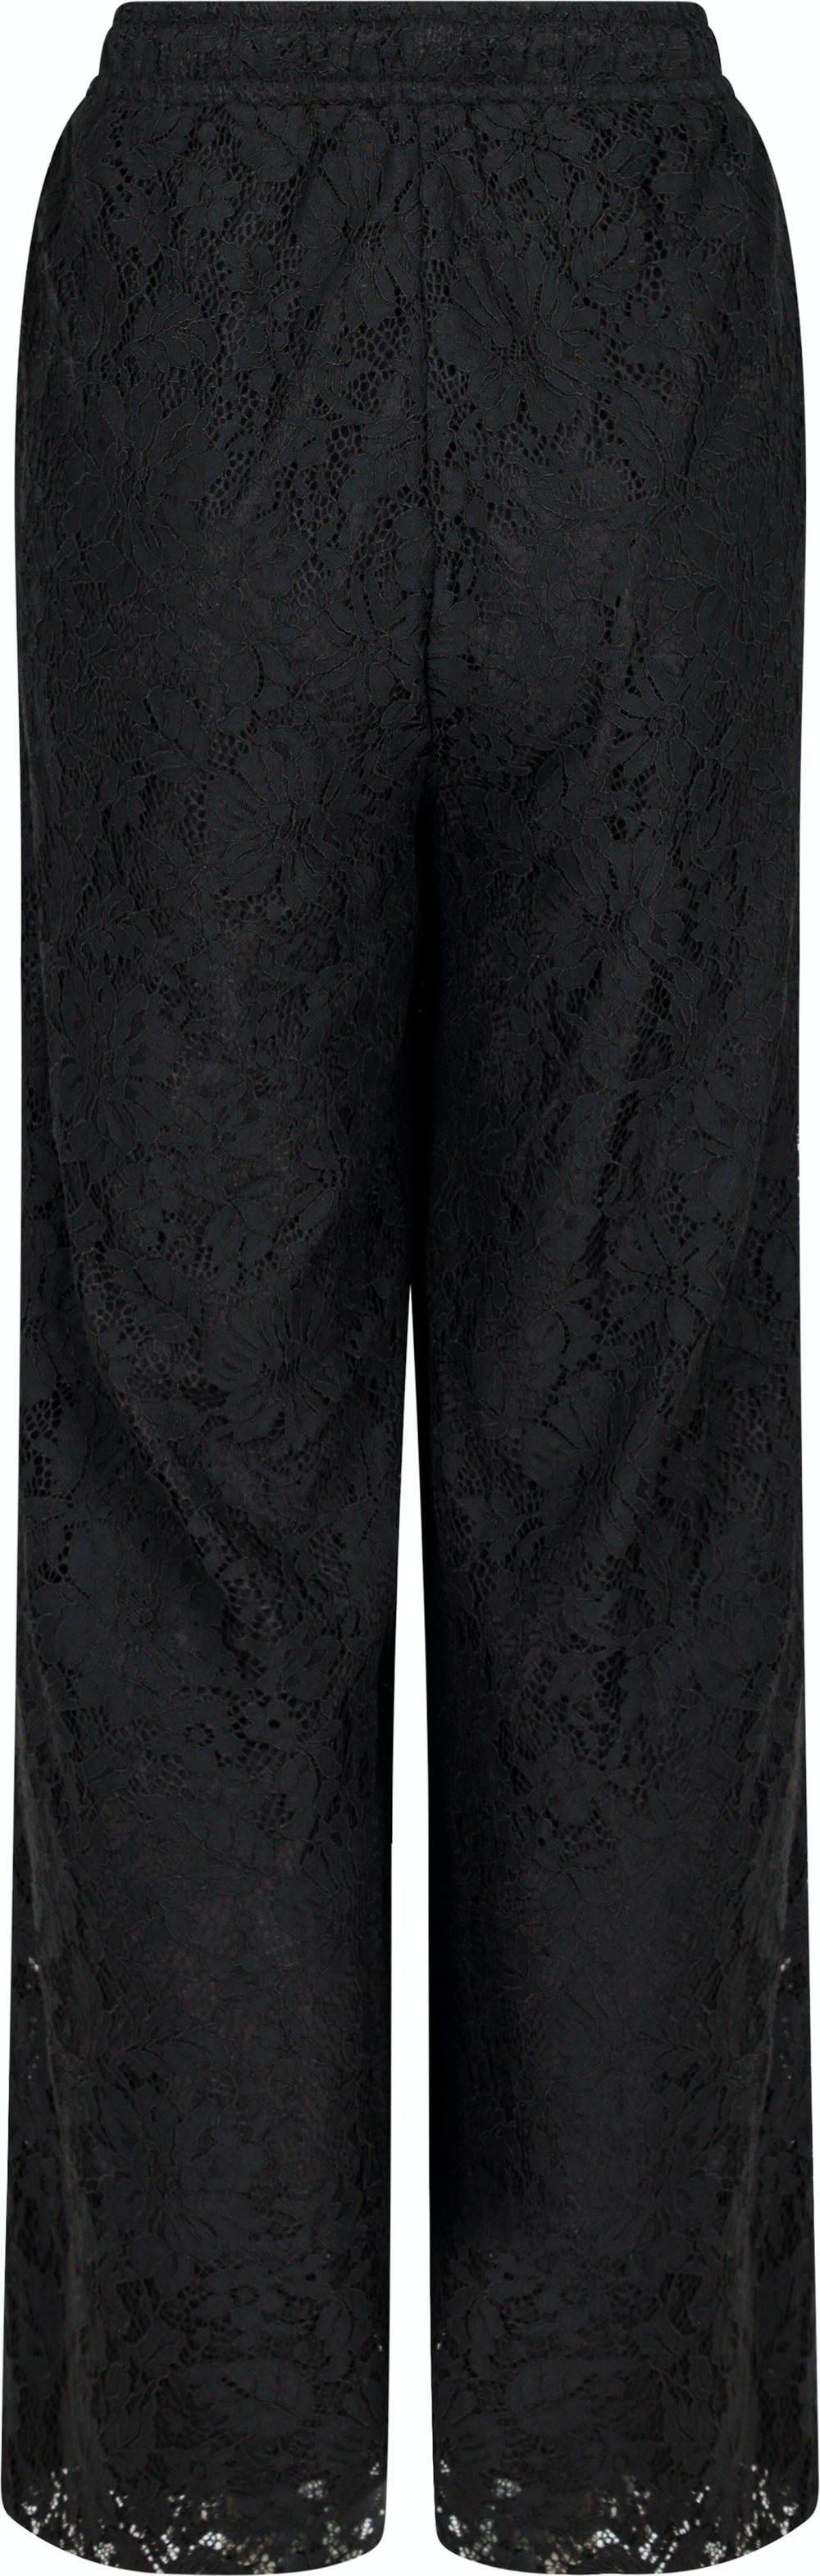 Neo Noir - Madison Lace Pants - Black